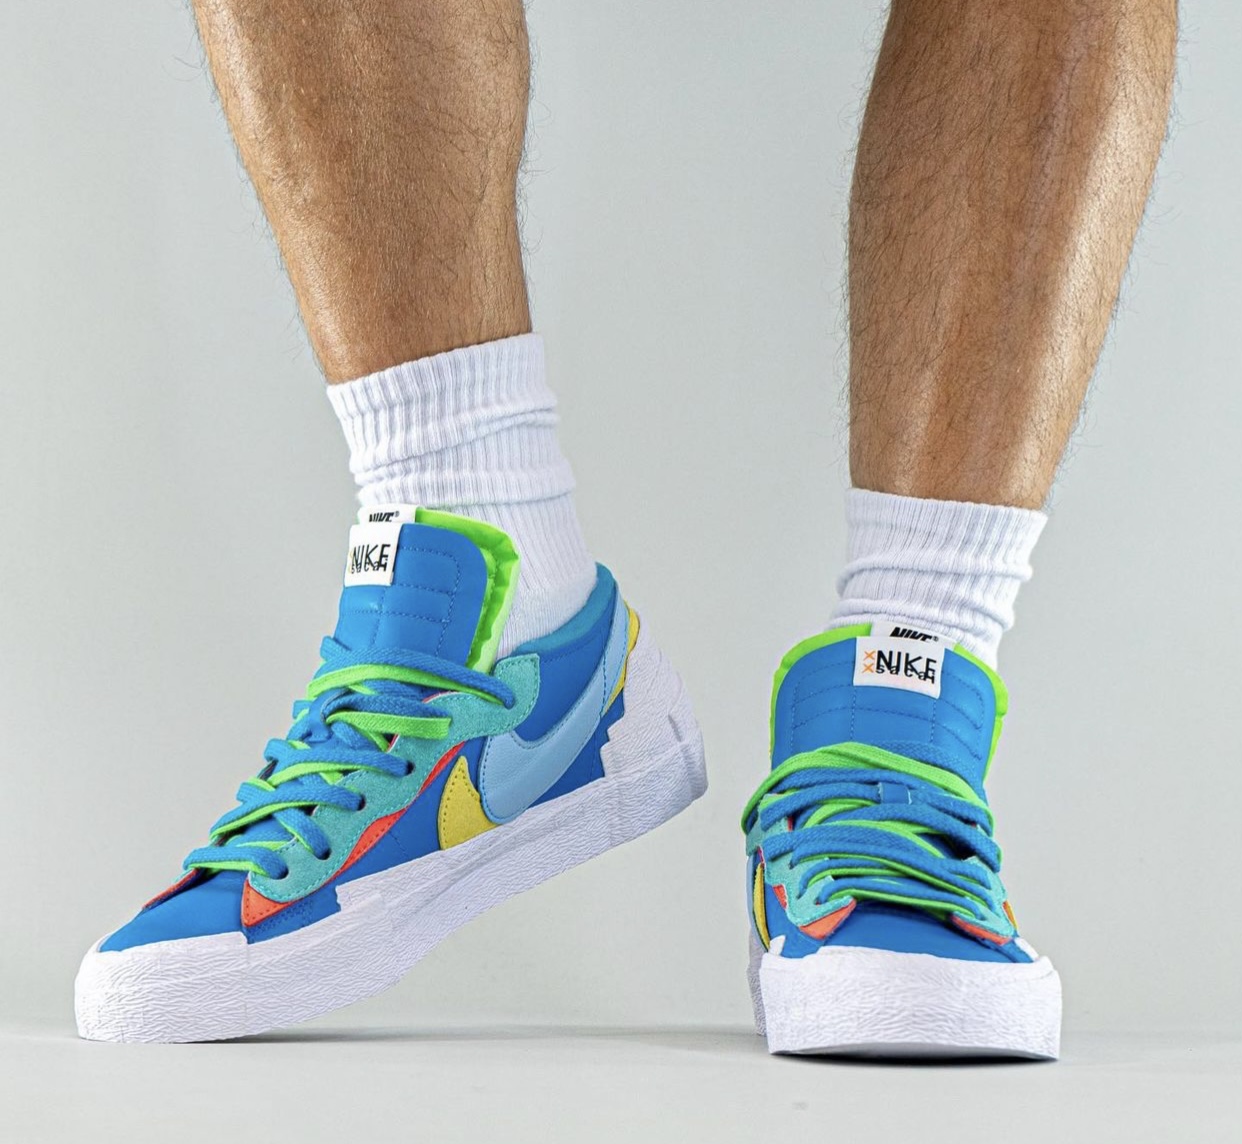 Kaws Sacai Nike Blazer Low DM7901-400 On-Feet